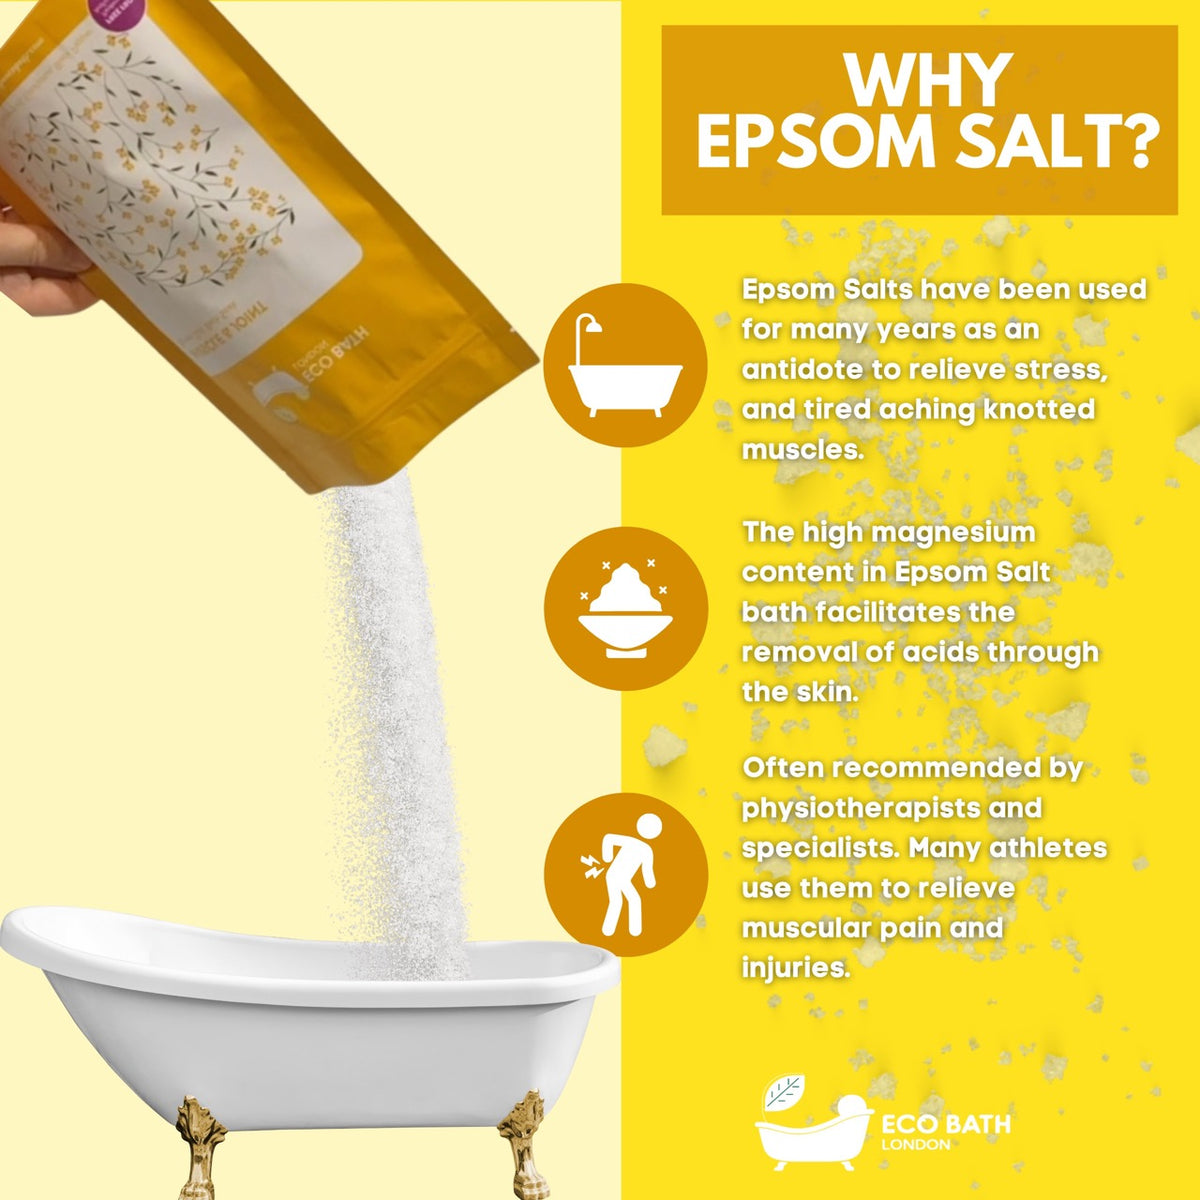 Eco Bath Muscle and Joint Epsom Salt Bath Soak - Pouch | 500g & 1000g